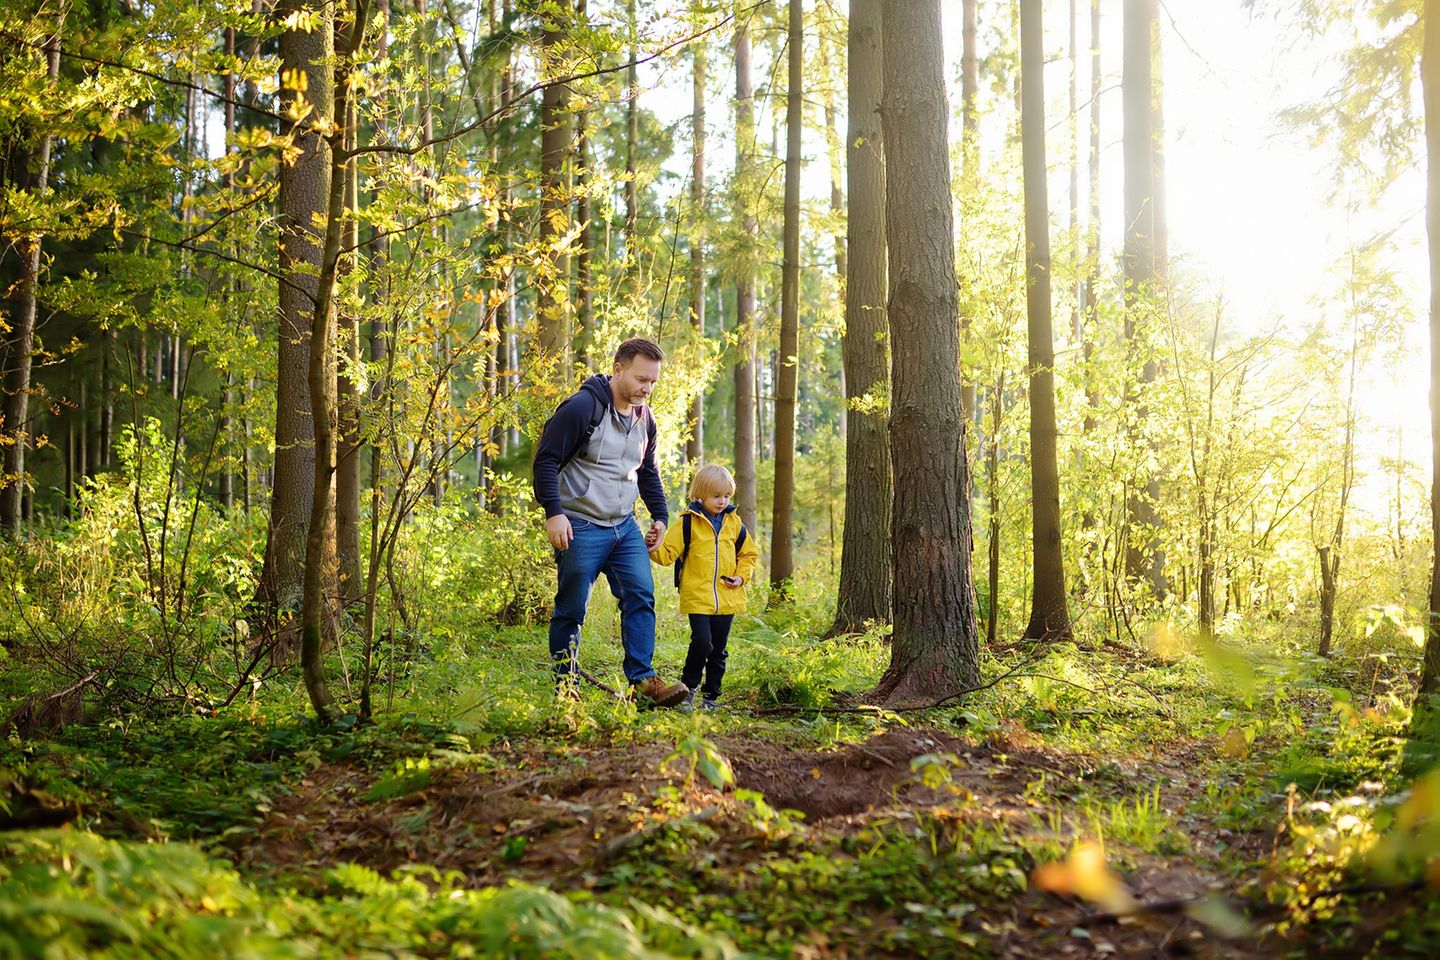 Nachhaltig leben, langfristig denken: Zum Beispiel gemeinsam mit Kindern die Natur entdecken und ihnen die Naturliebe weitergeben